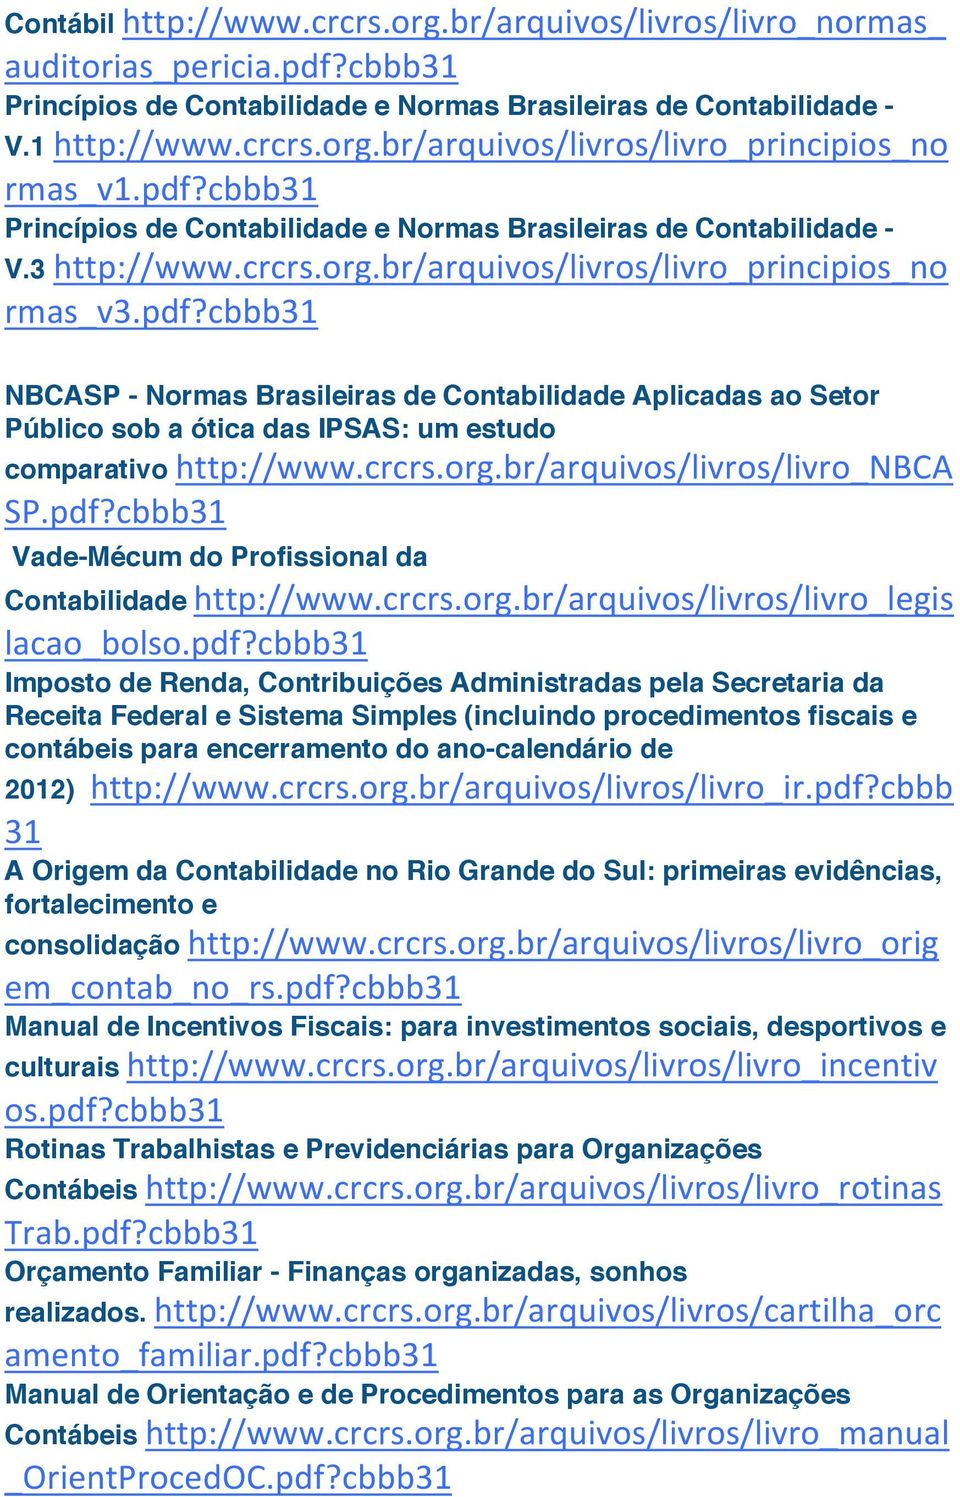 crcrs.org.br/arquivos/livros/livro_legis lacao_bolso.pdf?